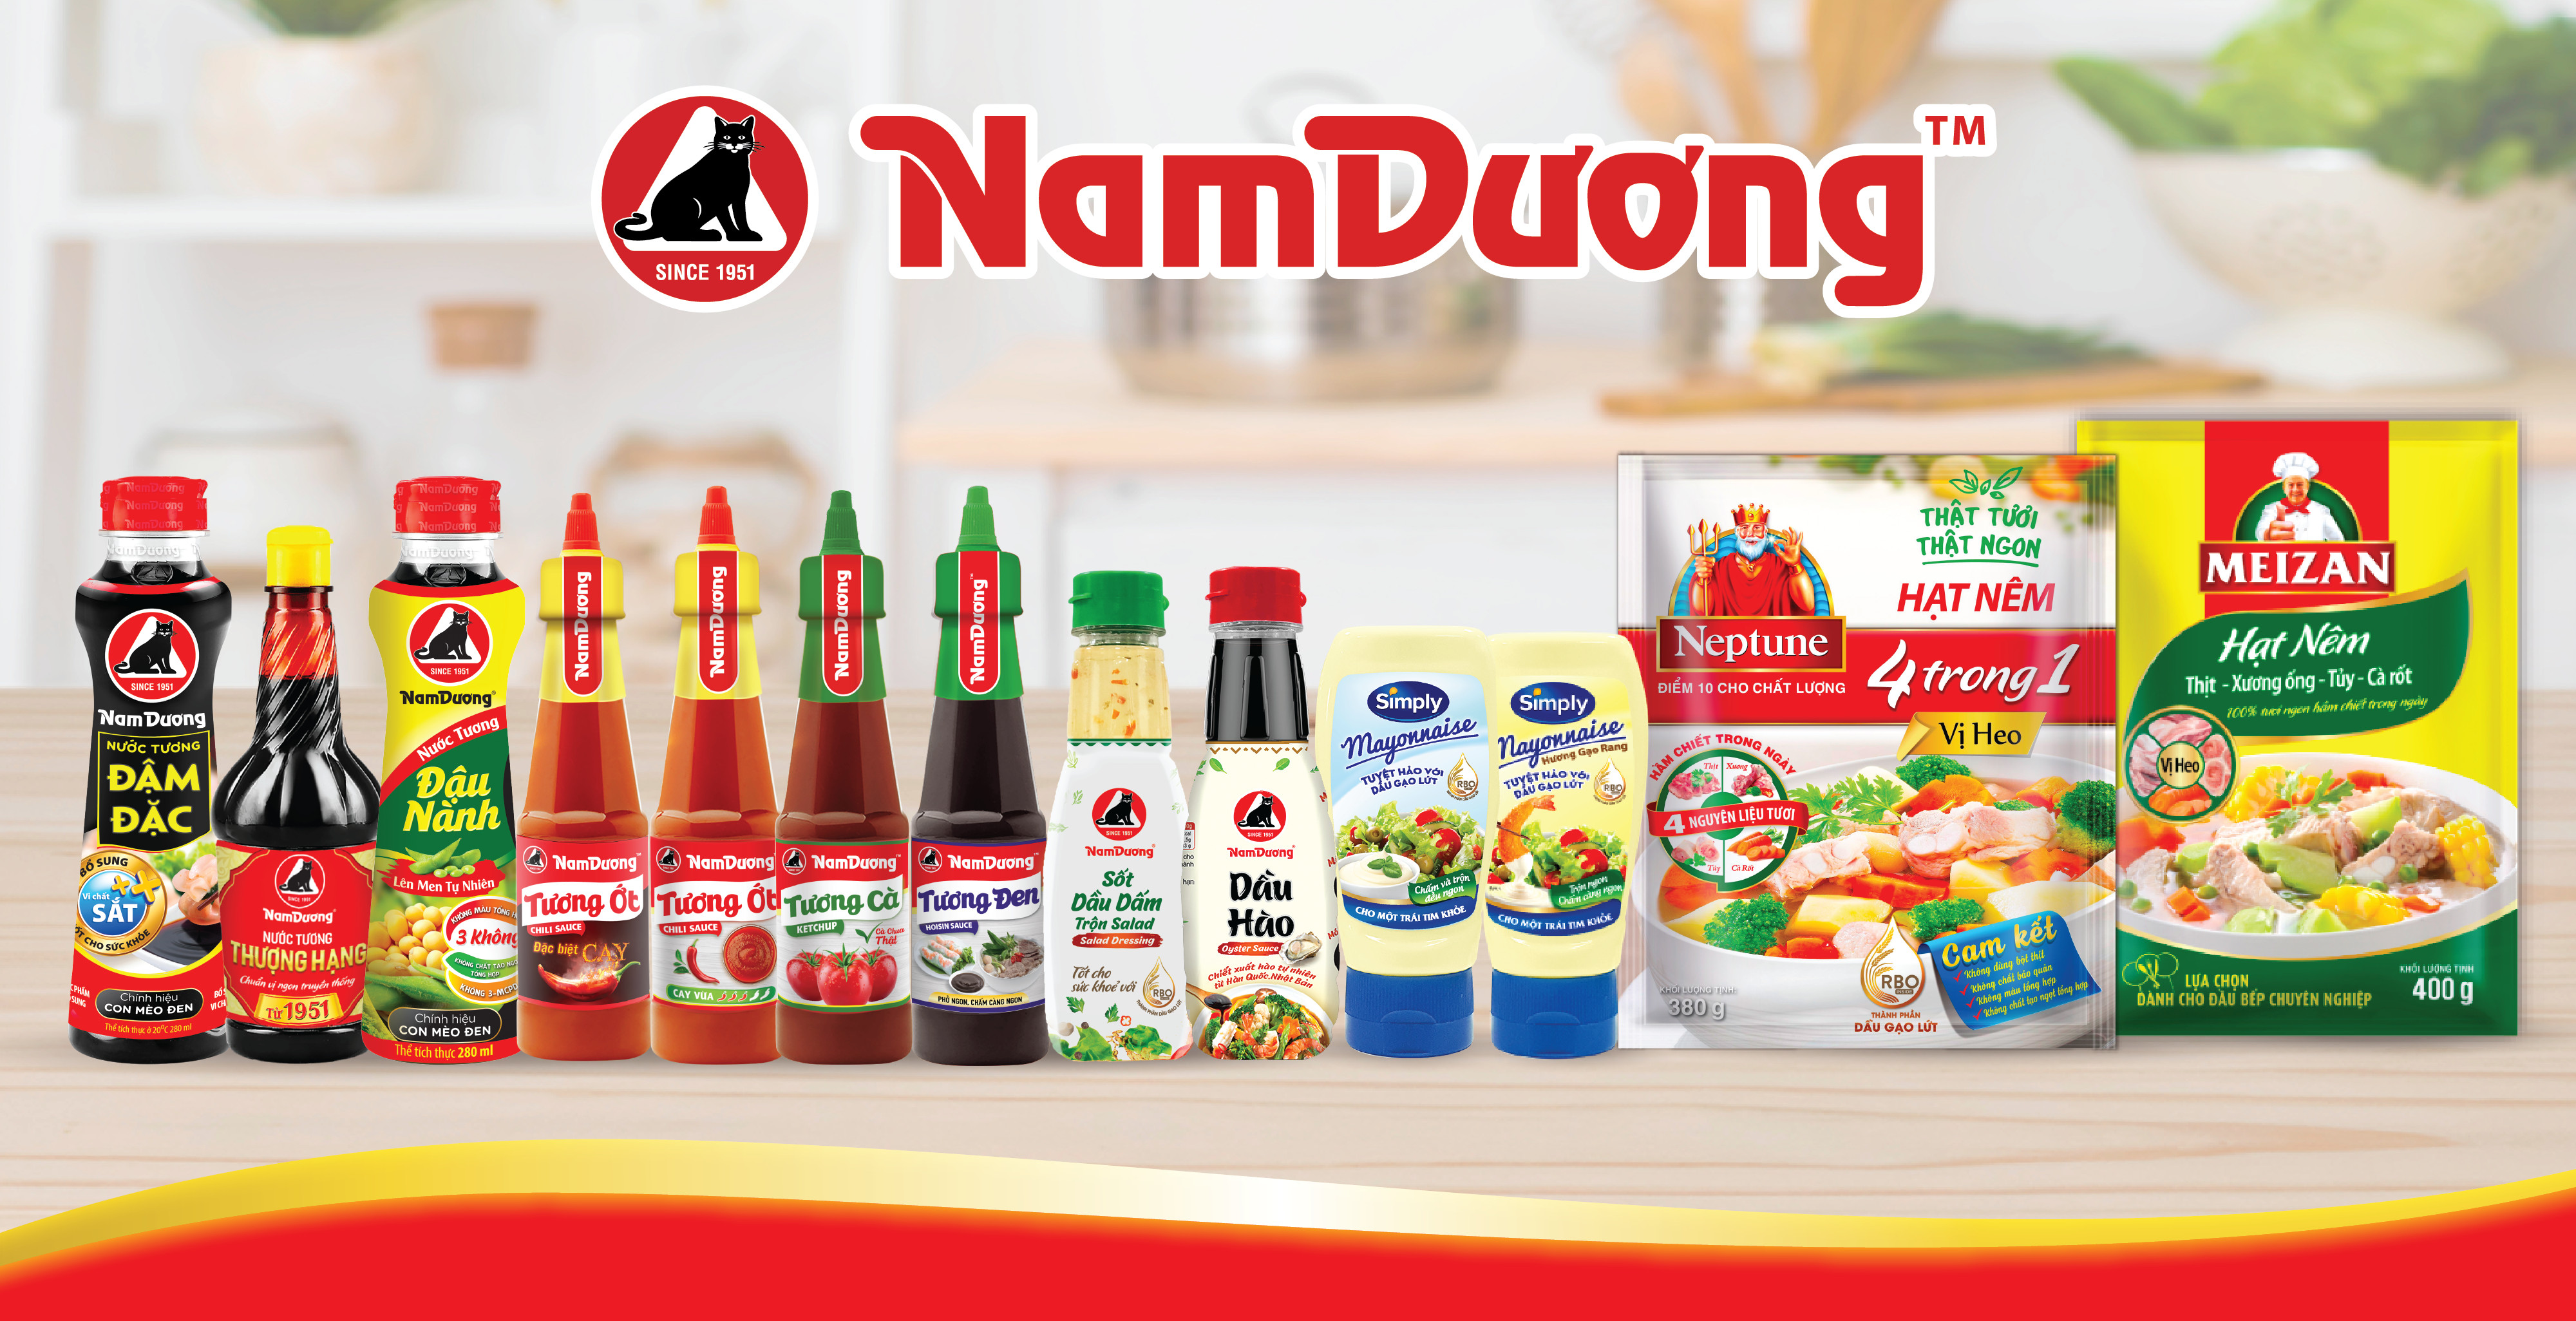 Trọn vẹn hương vị Việt trong từng sản phẩm Nam Dương